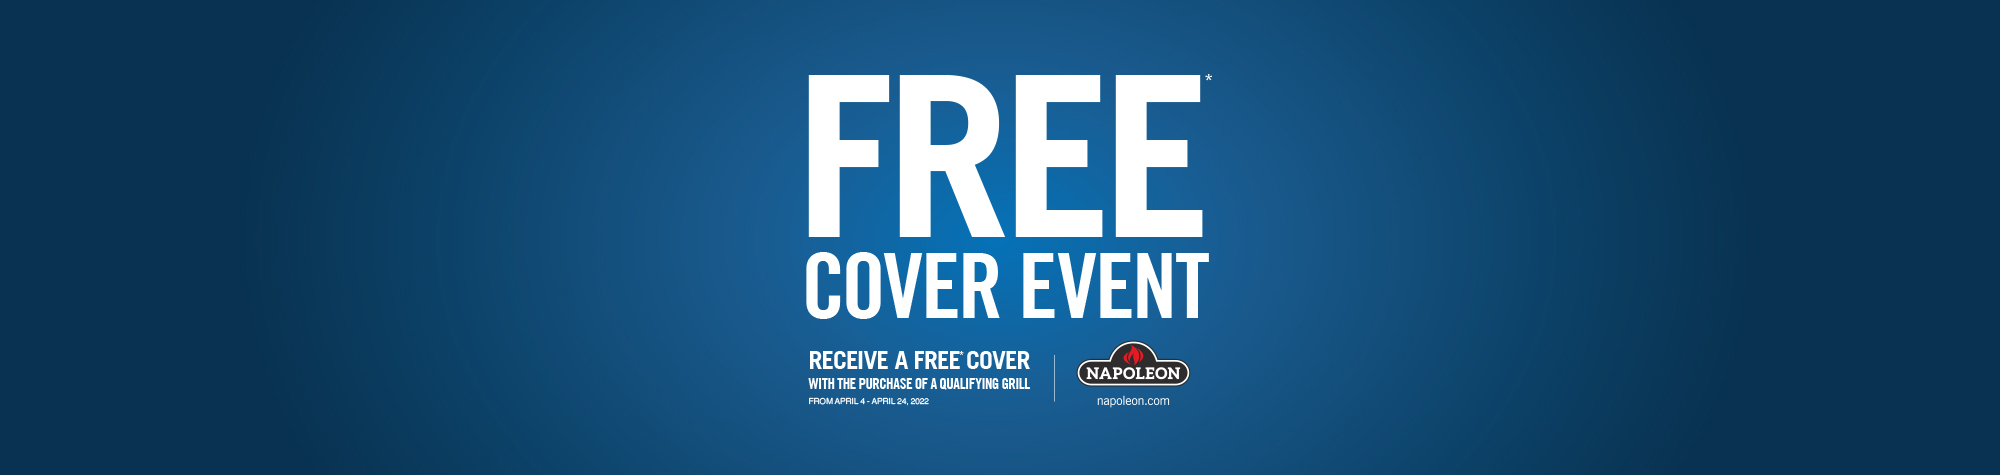 Napoleon Free Cover Event